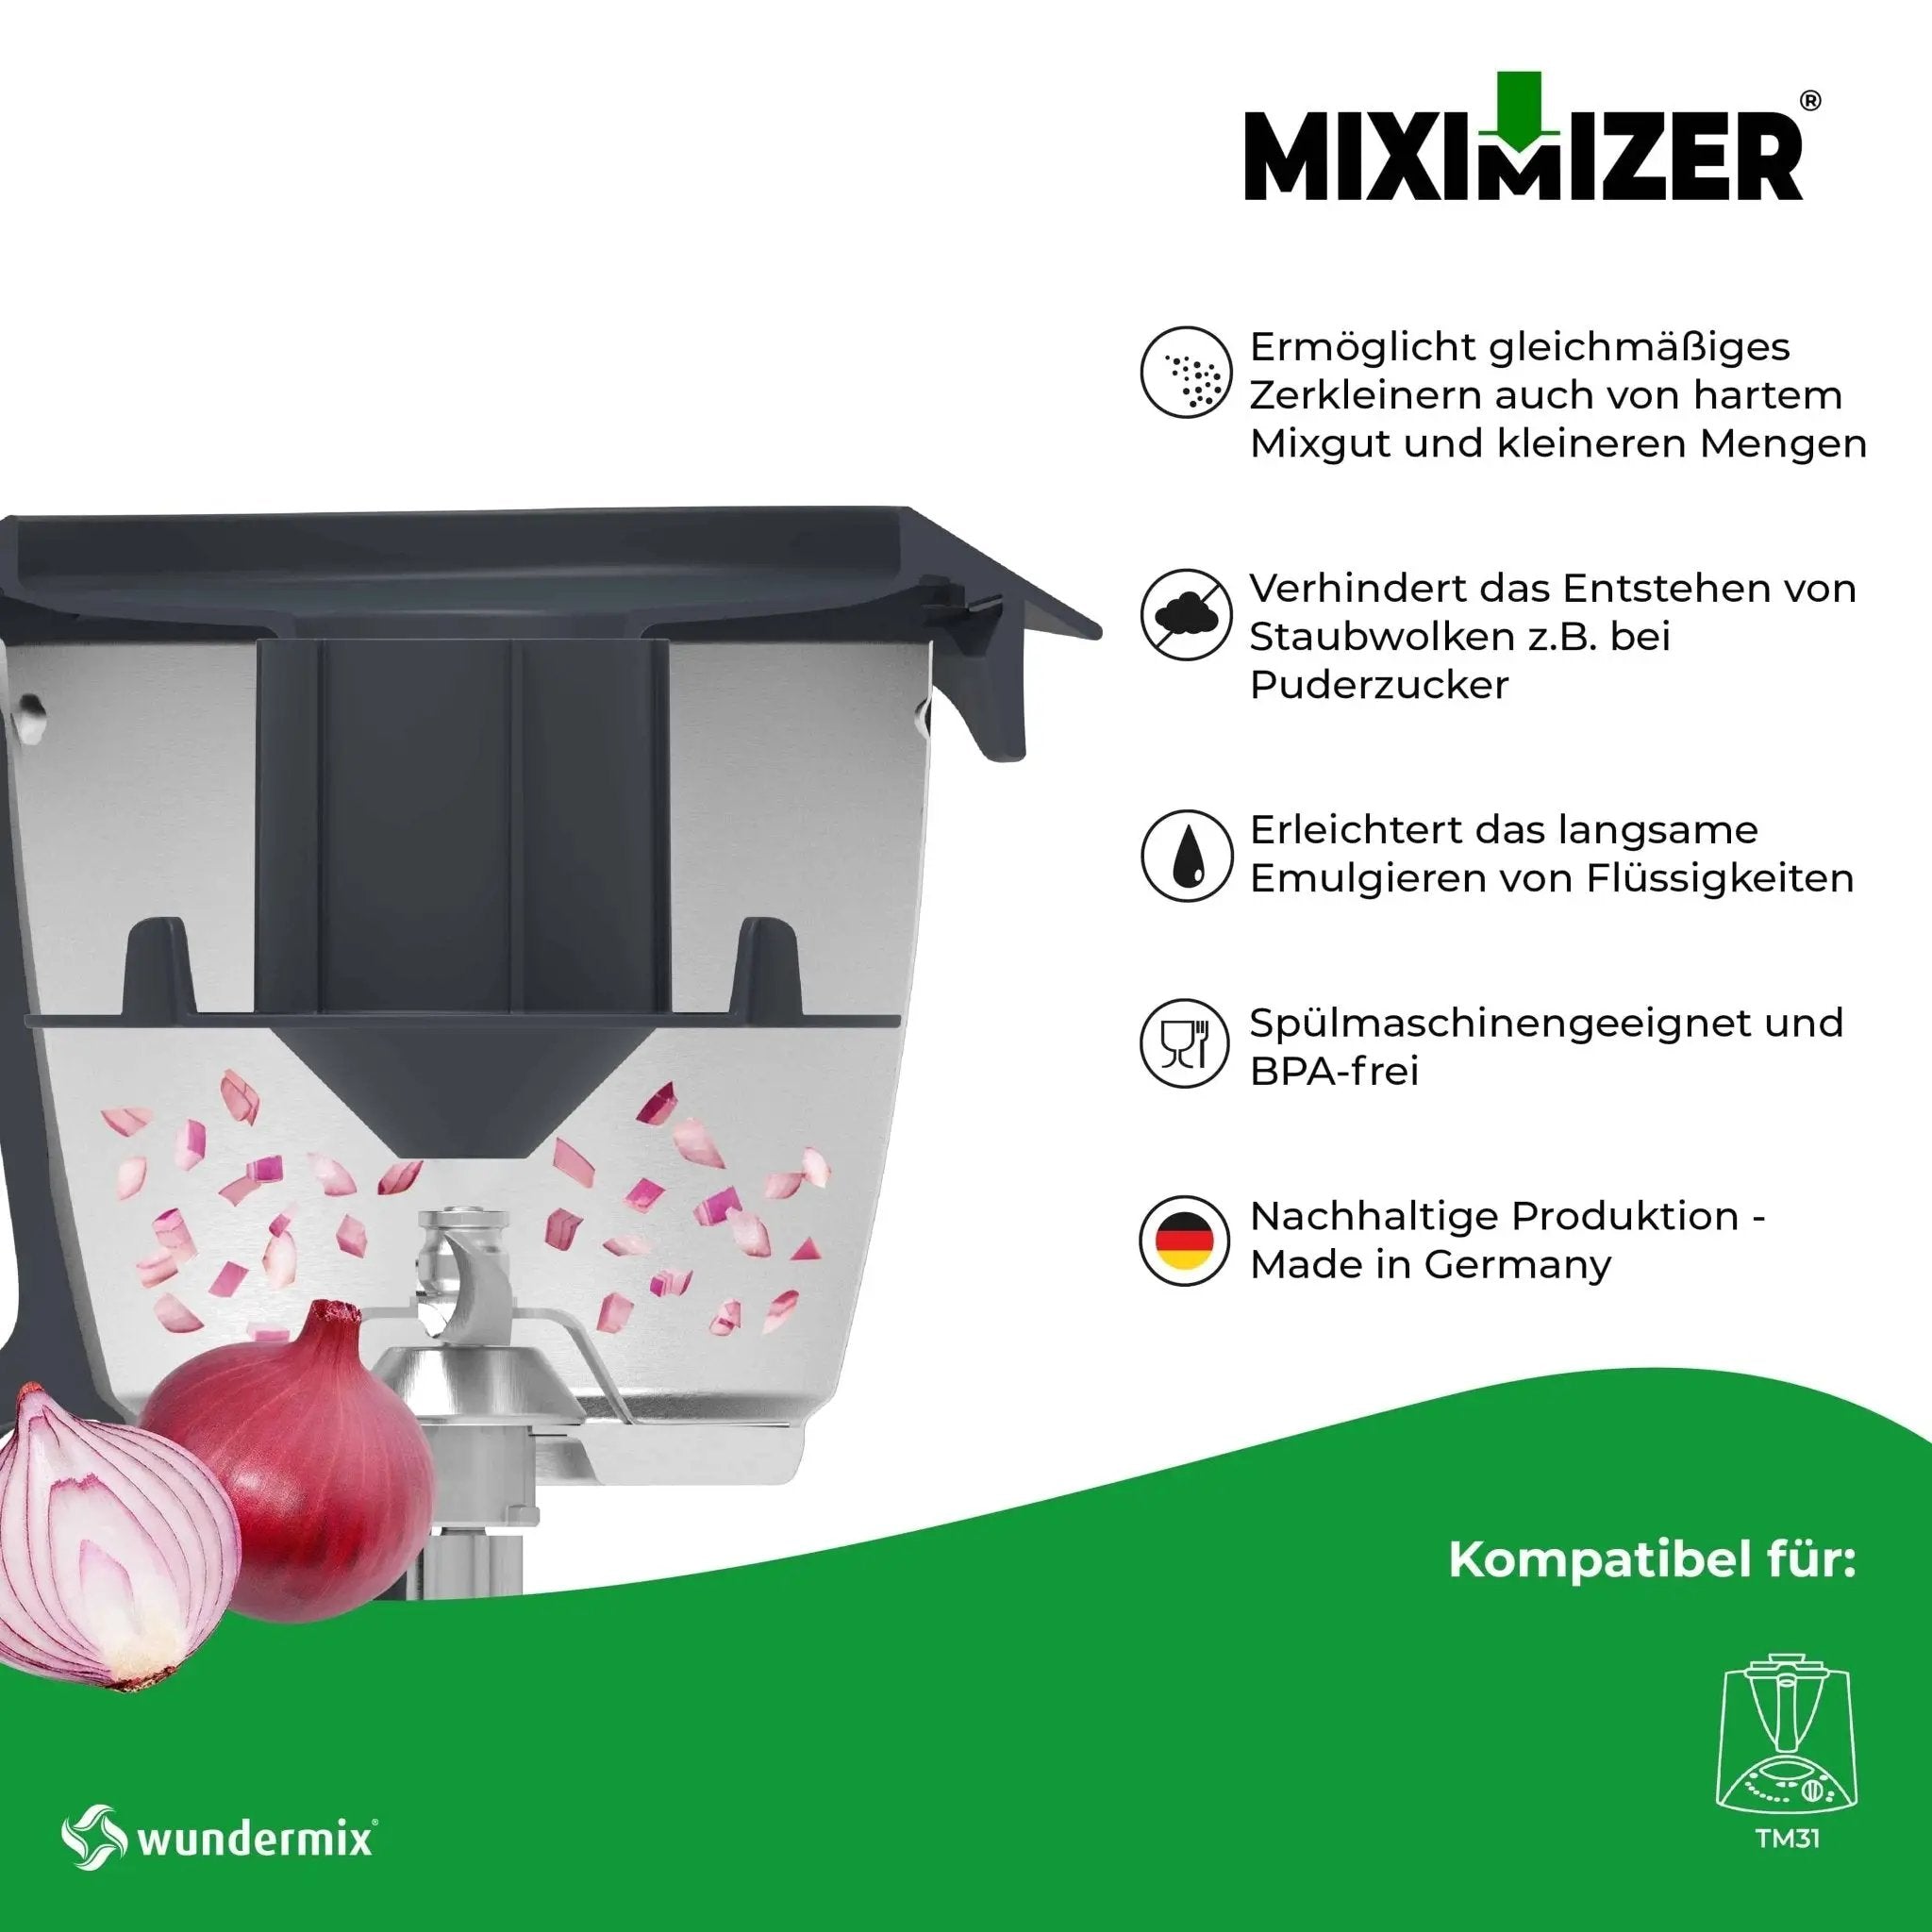 Miximizer® | Mixtopf-Verkleinerung für Thermomix - Wundermix GmbH